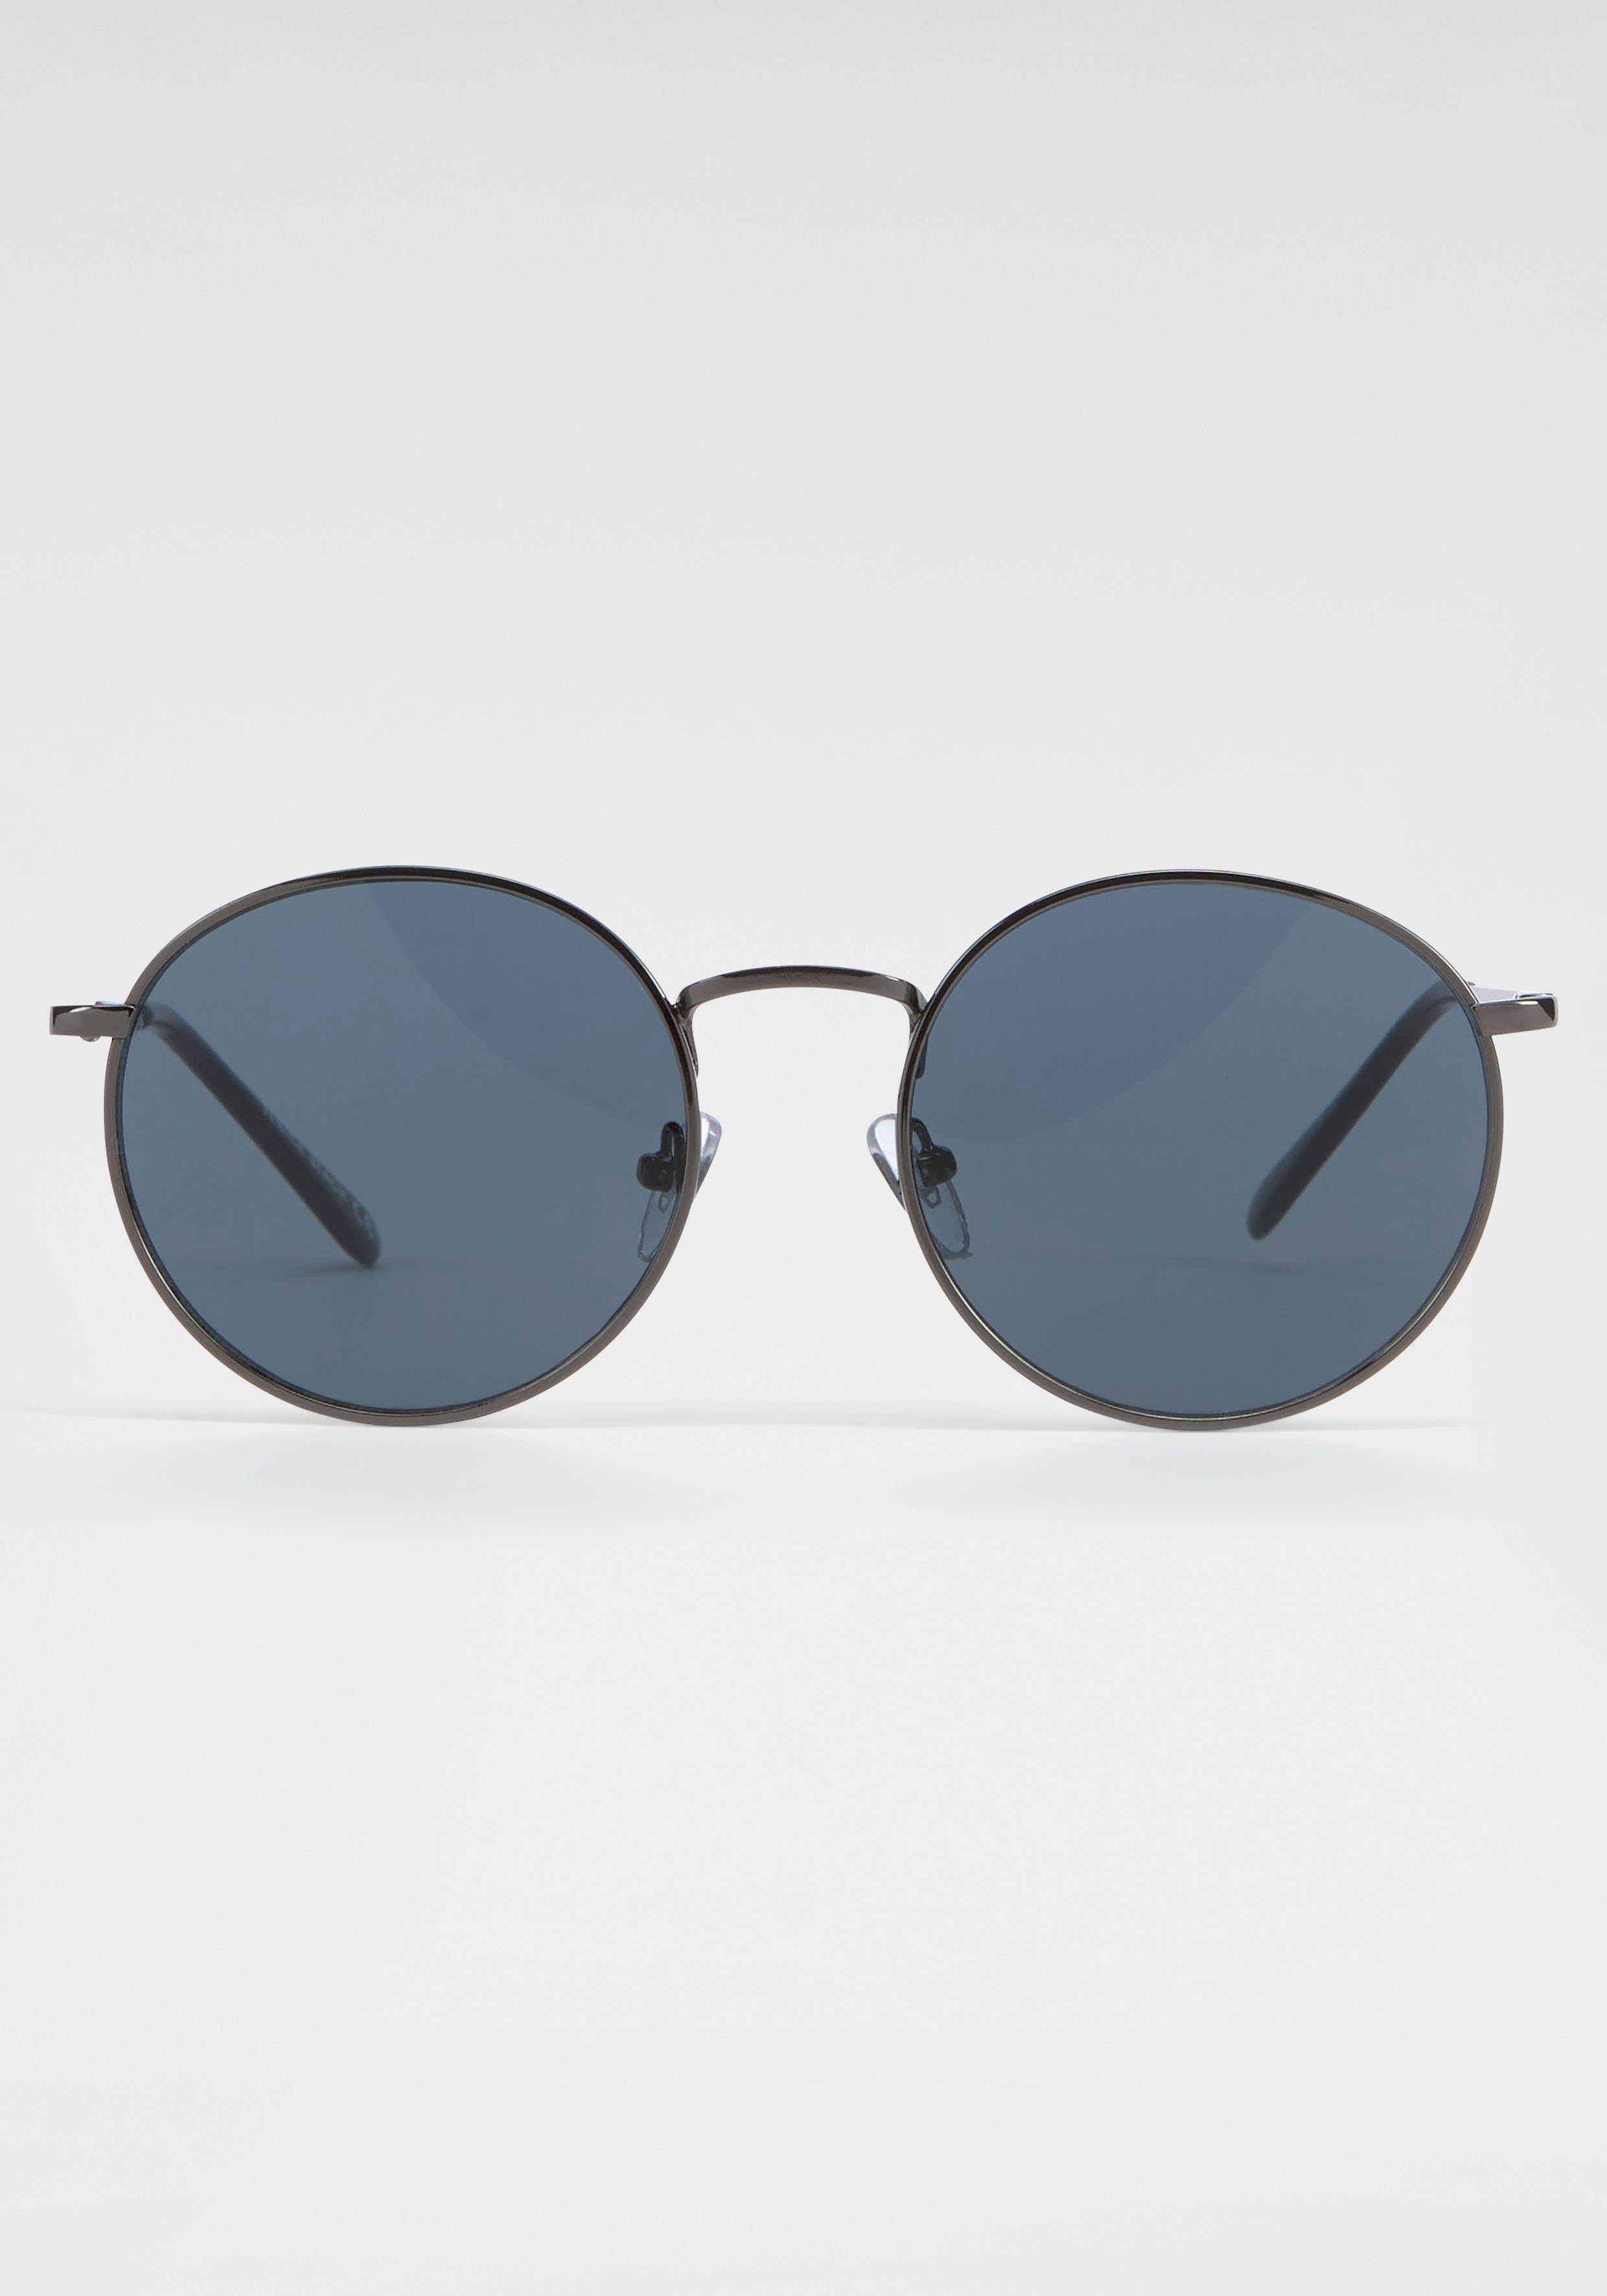 Bench. Sonnenbrillen online OTTO | kaufen